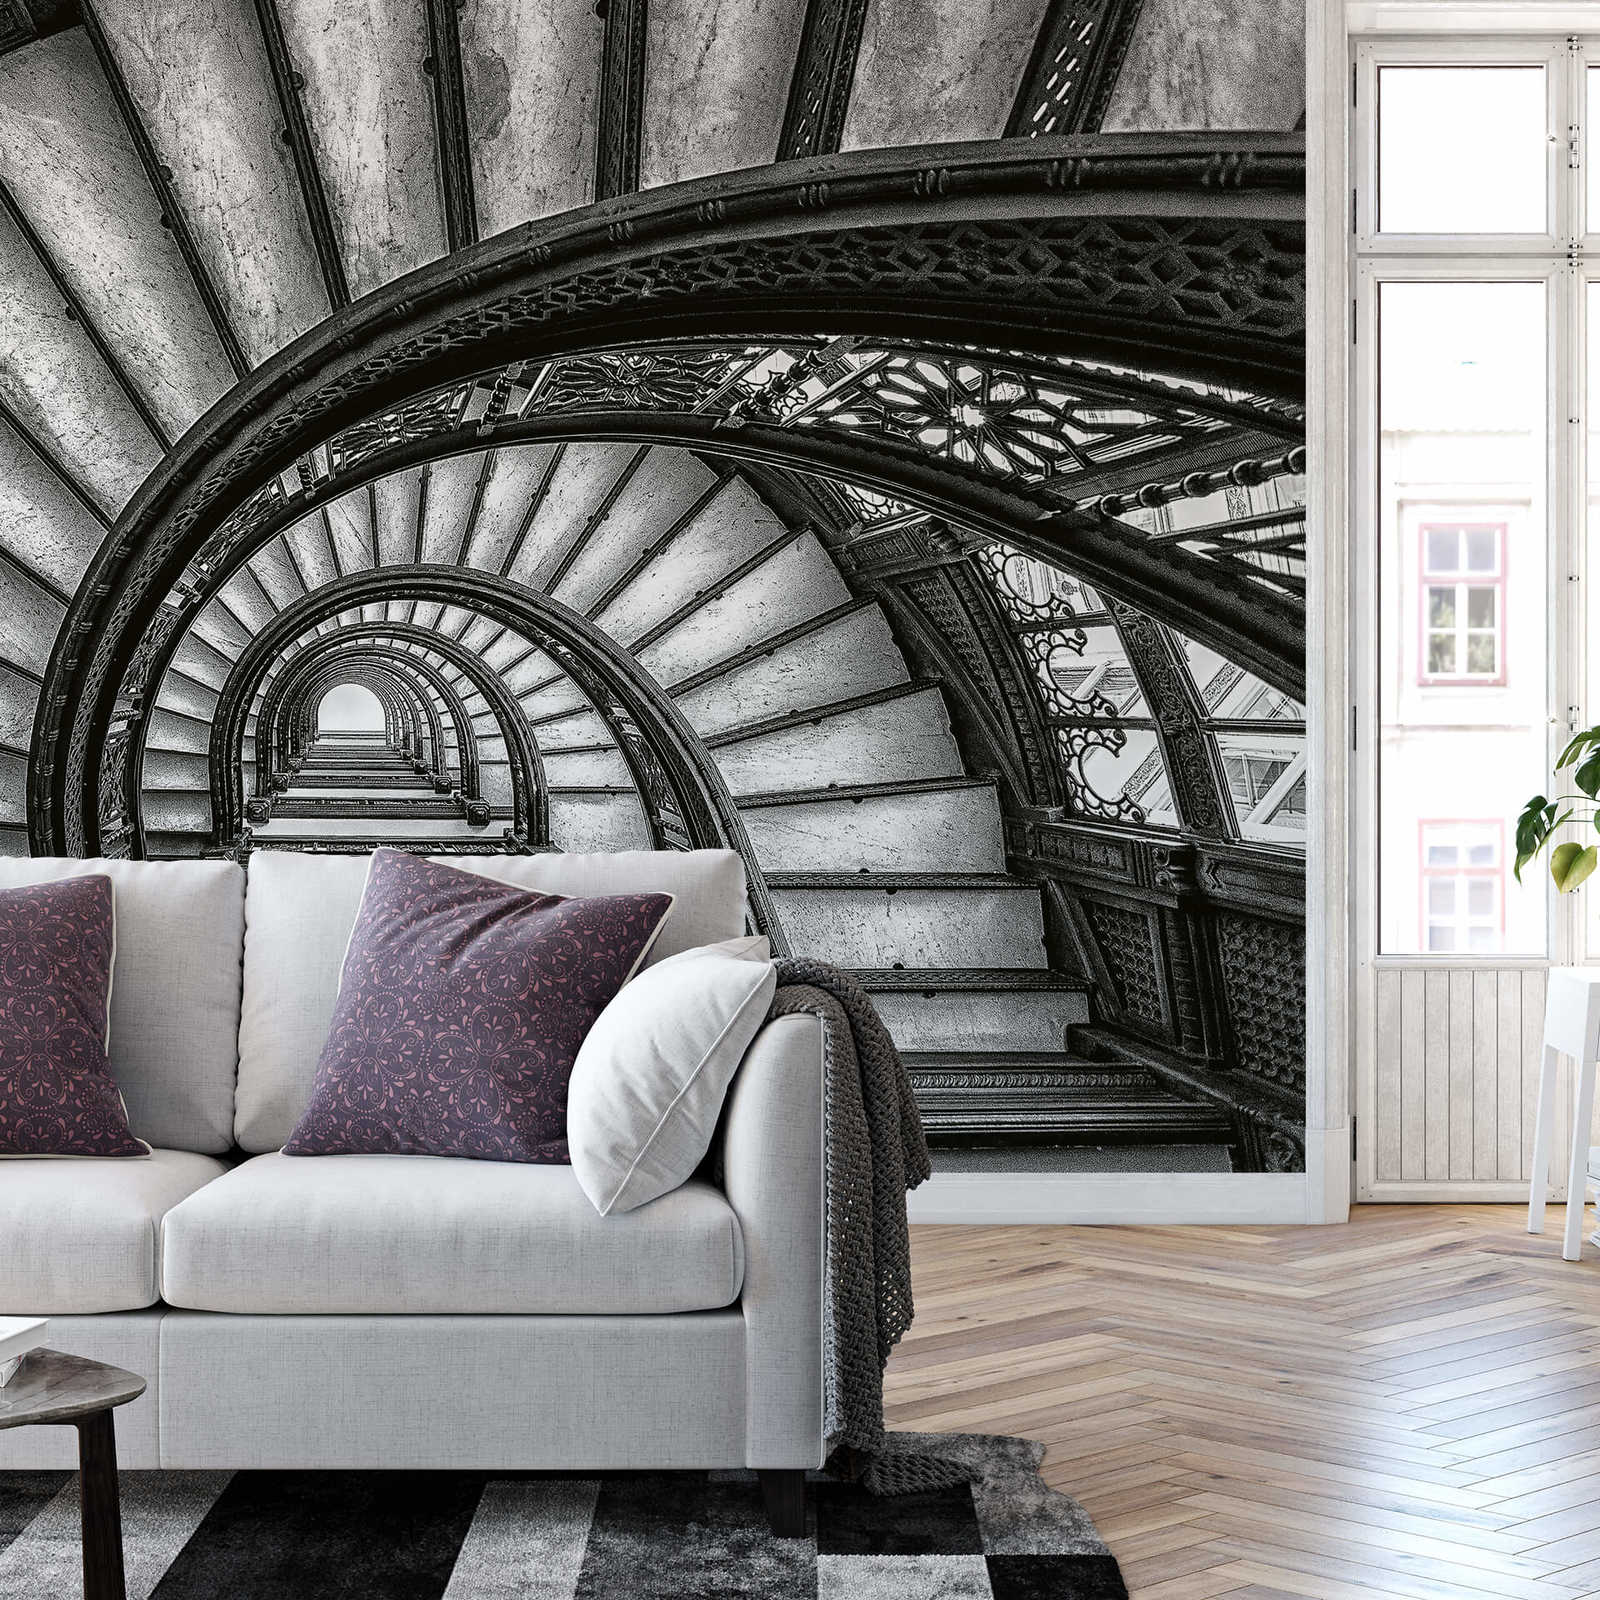             Fototapete alte Treppen – Grau, Weiß, Schwarz
        